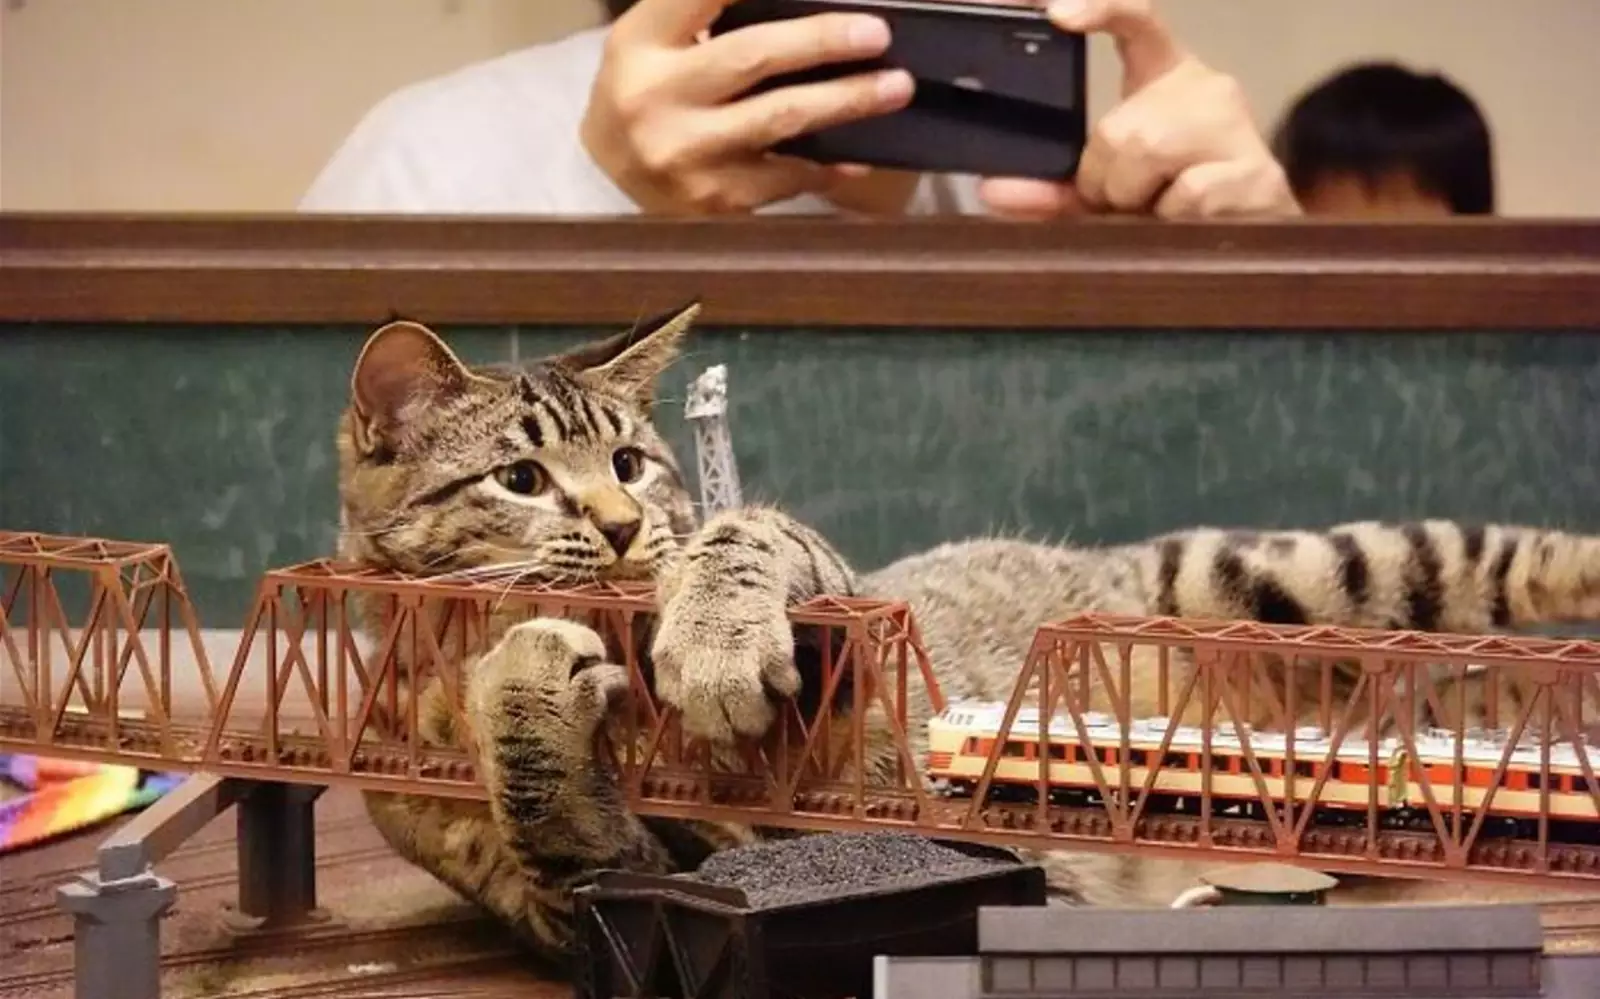 Котейки быстро почувствовали себя в кафе как дома и стали лазить по макету железной дороги. 